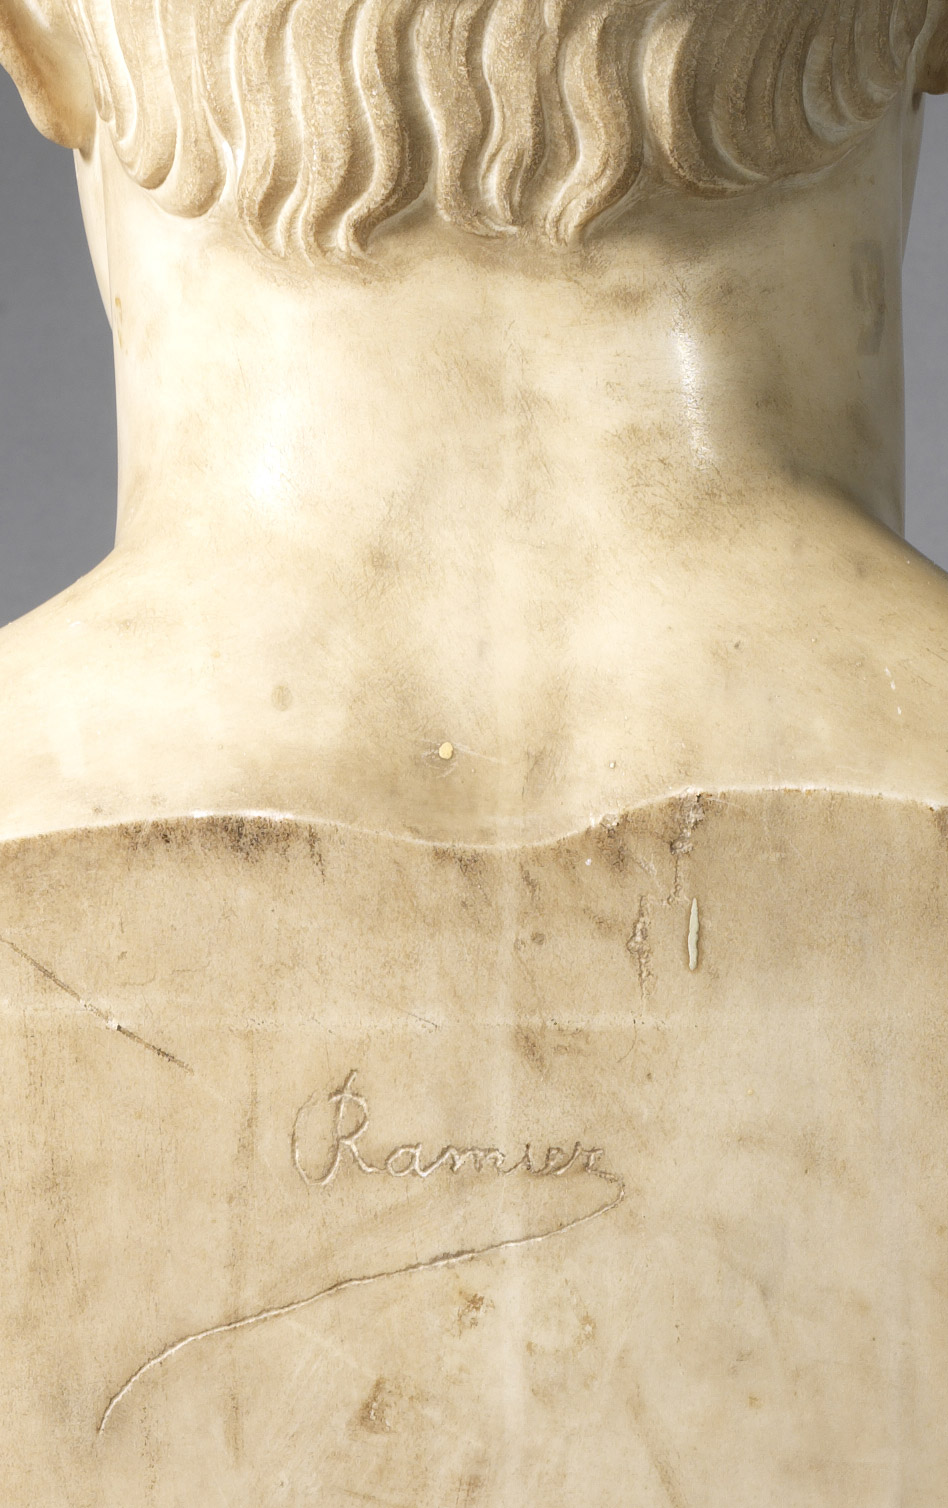 Buste de Napoléon signé Ramier - Patrimoine Charles-André COLONNA WALEWSKI, en ligne directe de Napoléon